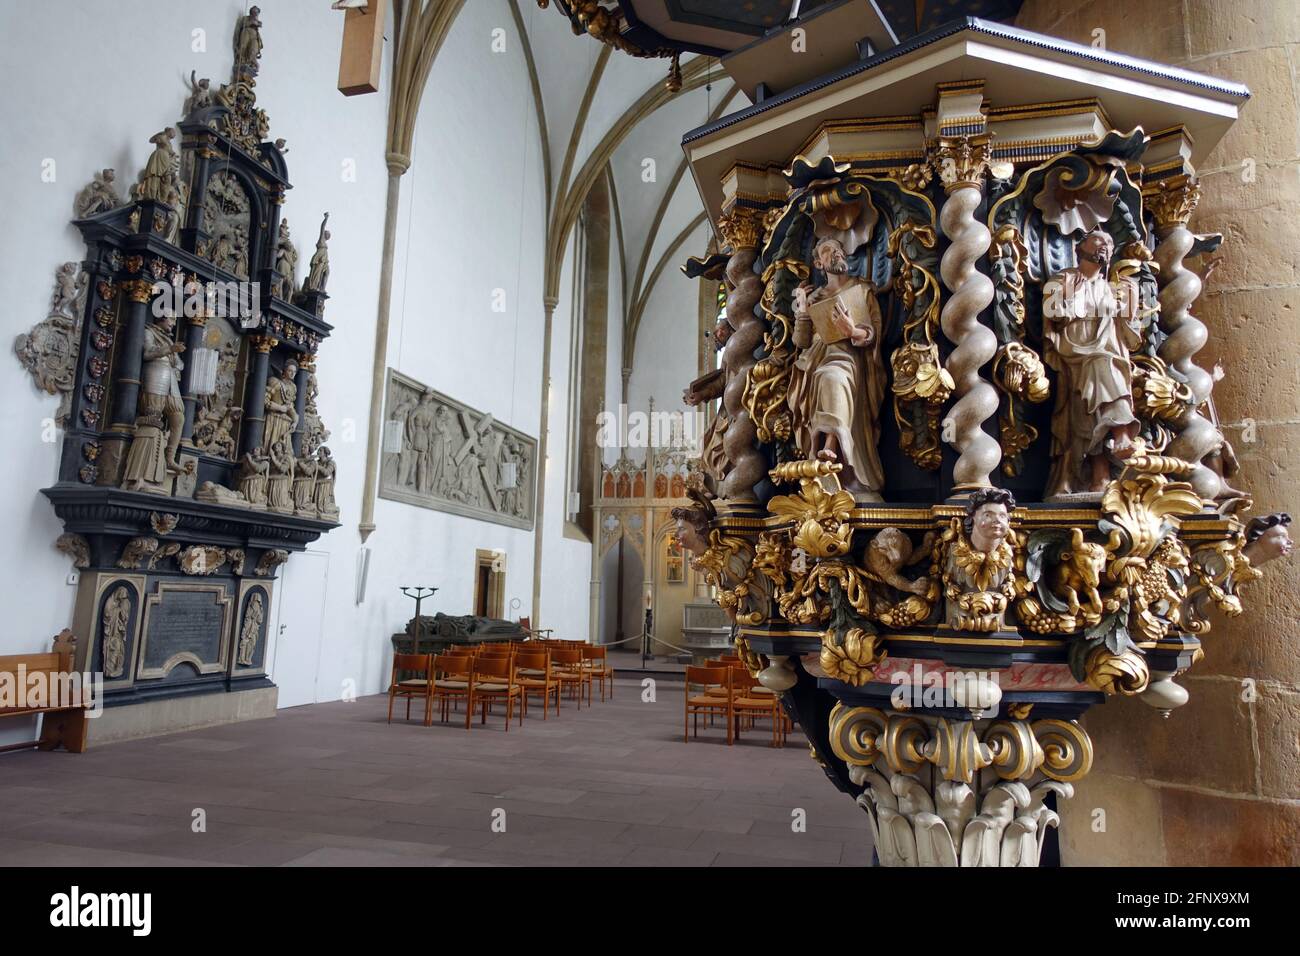 evangelische Neustädter Marienkirche aus dem 15. Jahrhundert - barocke Kanzel aus dem 17. Jahrhundert, Bielefeld, Nordrhein-Westfalen, Deutschland Stock Photo